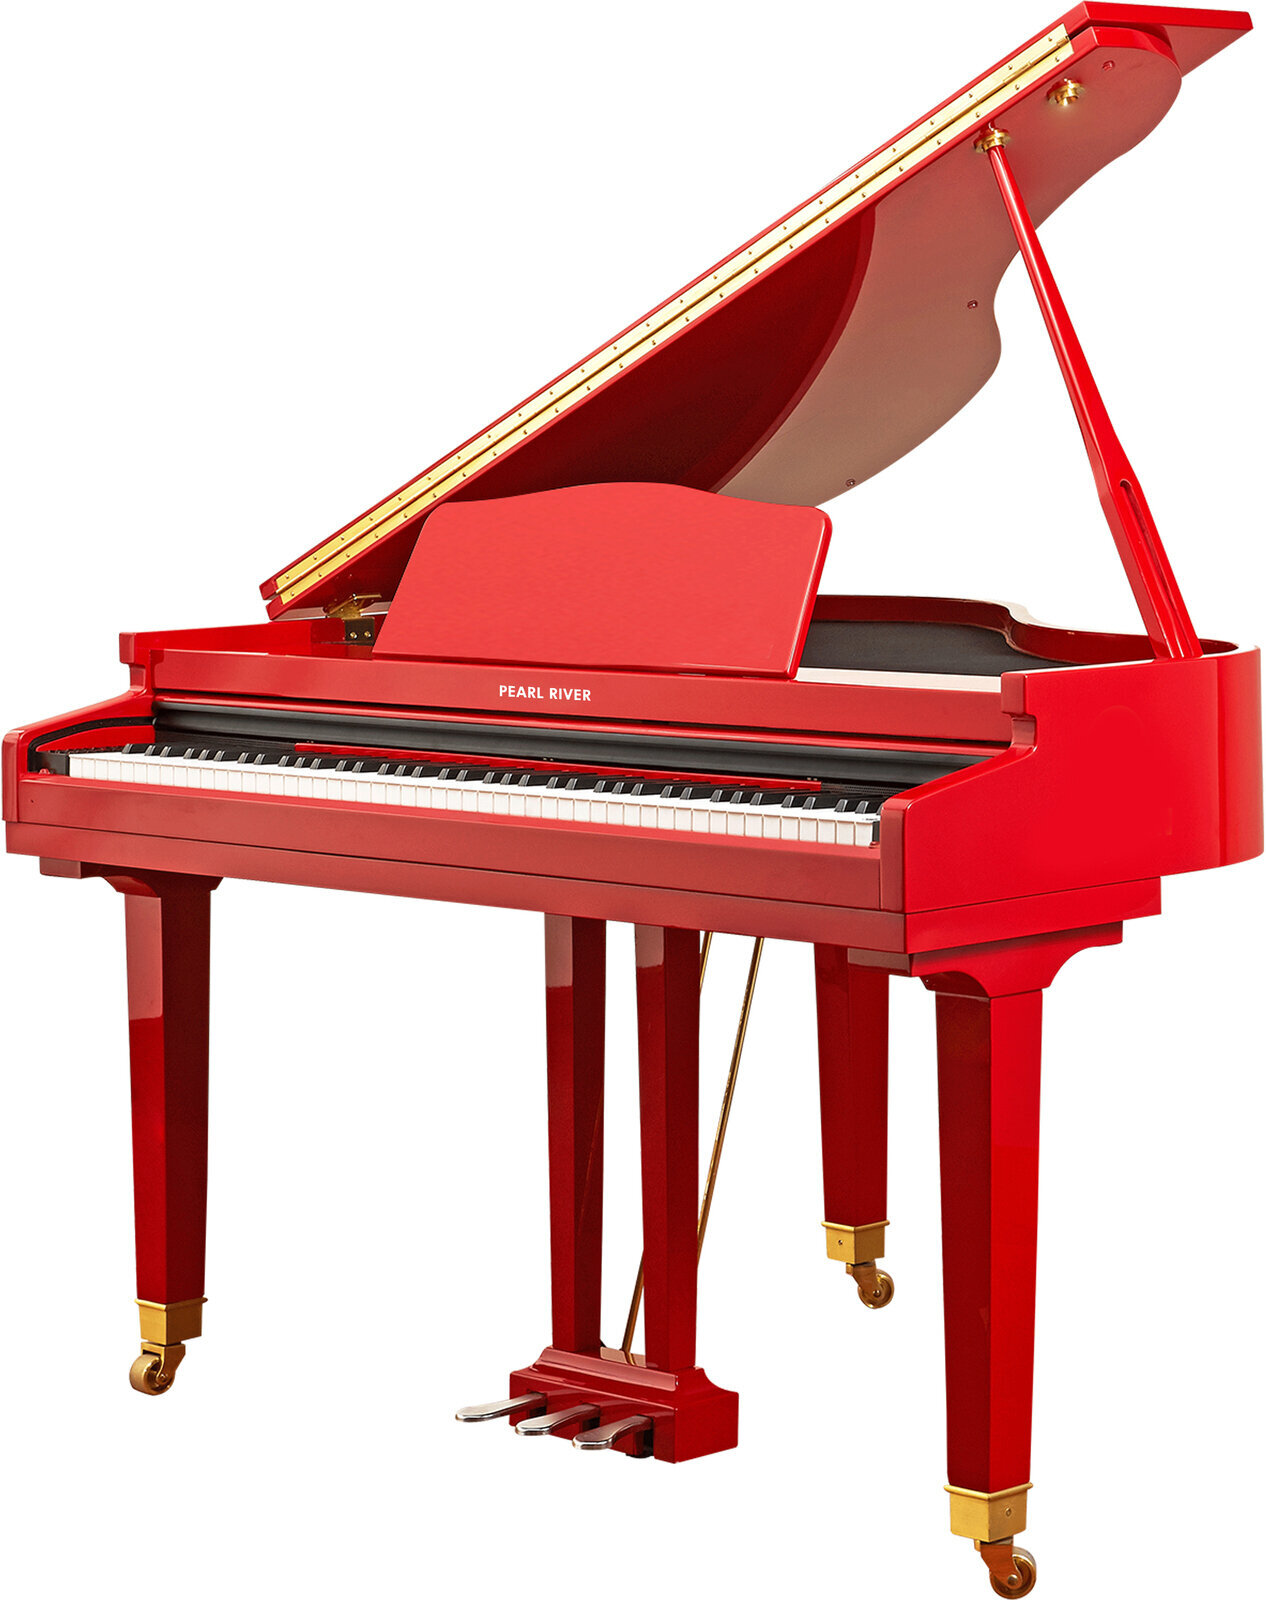 Ψηφιακό πιάνο με ουρά Pearl River GP 1100 Κόκκινο Ψηφιακό πιάνο με ουρά